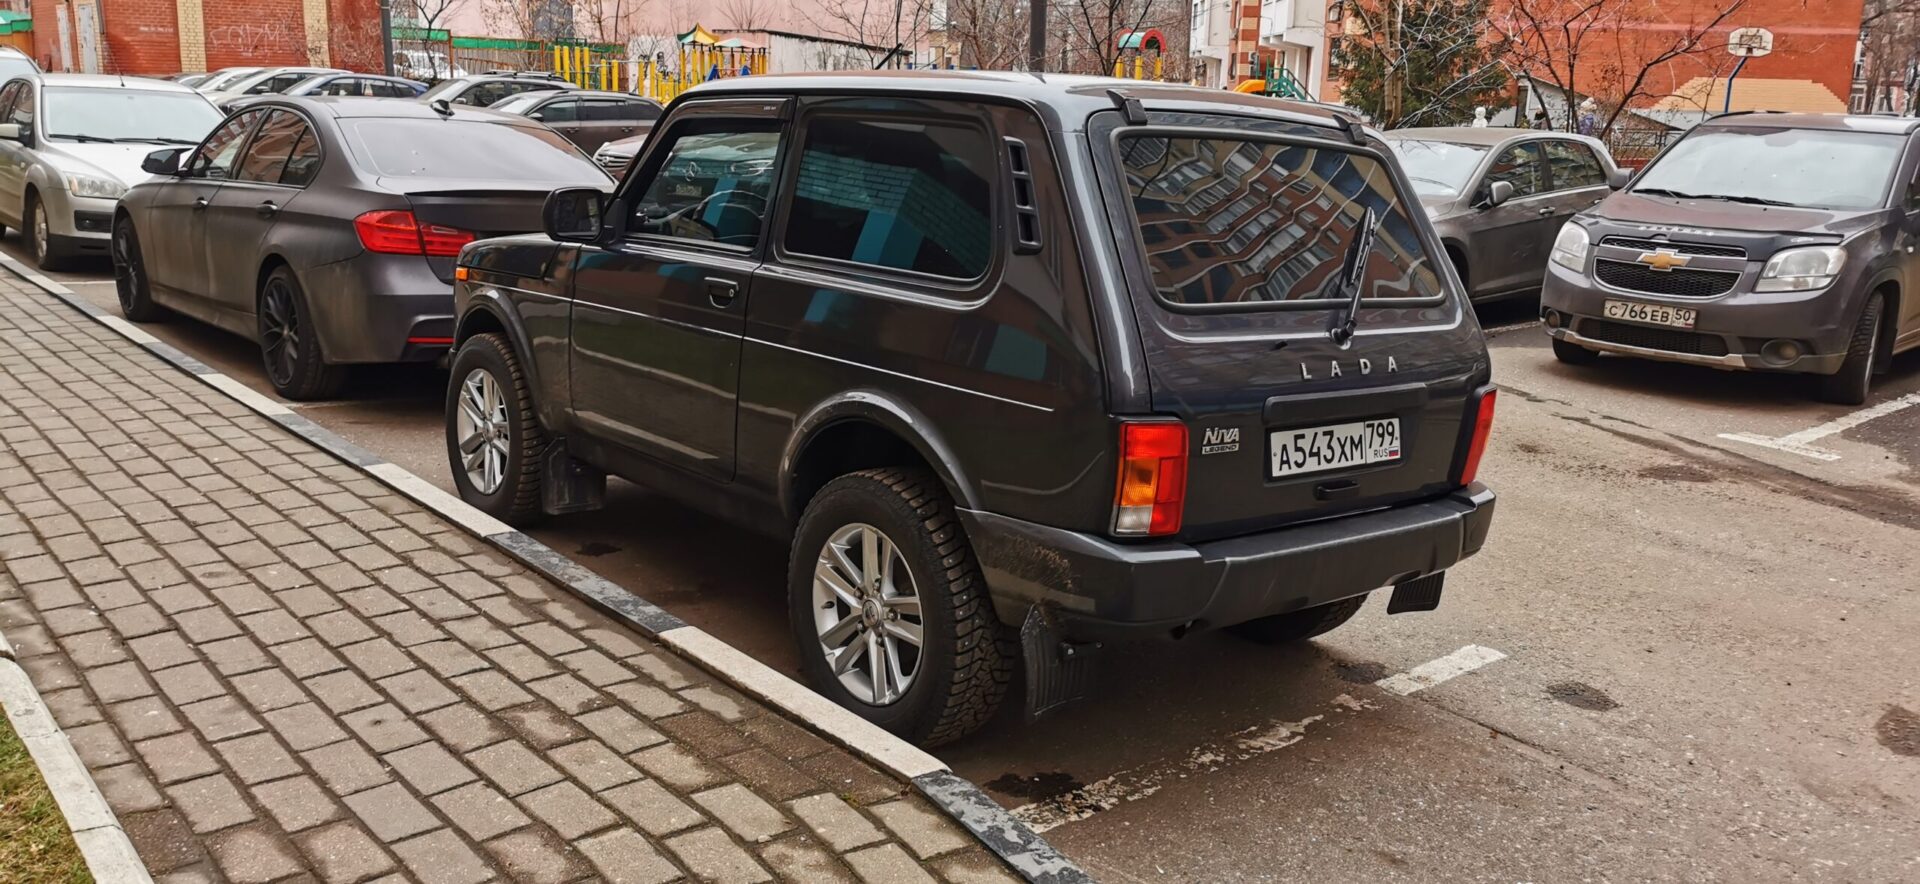 Кросс-версии автомобилей стали популярны среди граждан в РФ из-за цены и обвеса